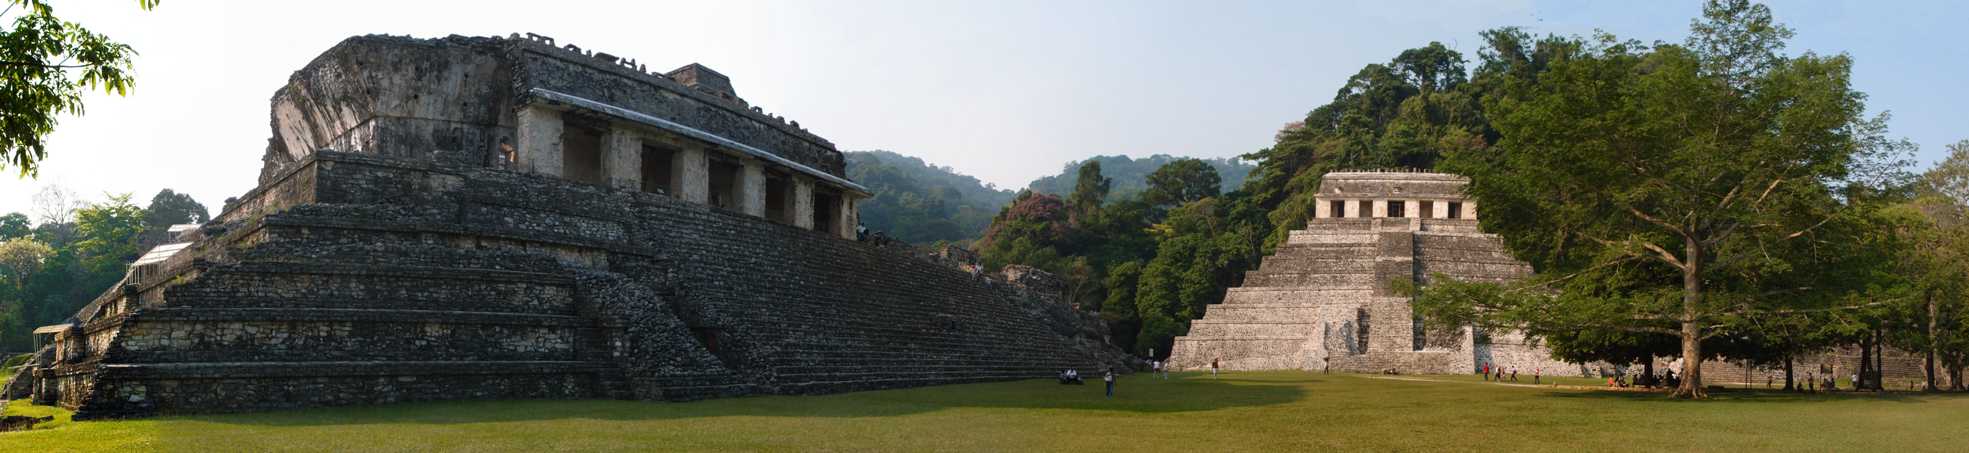 mexique,palenque,palace et temple des inscriptions)